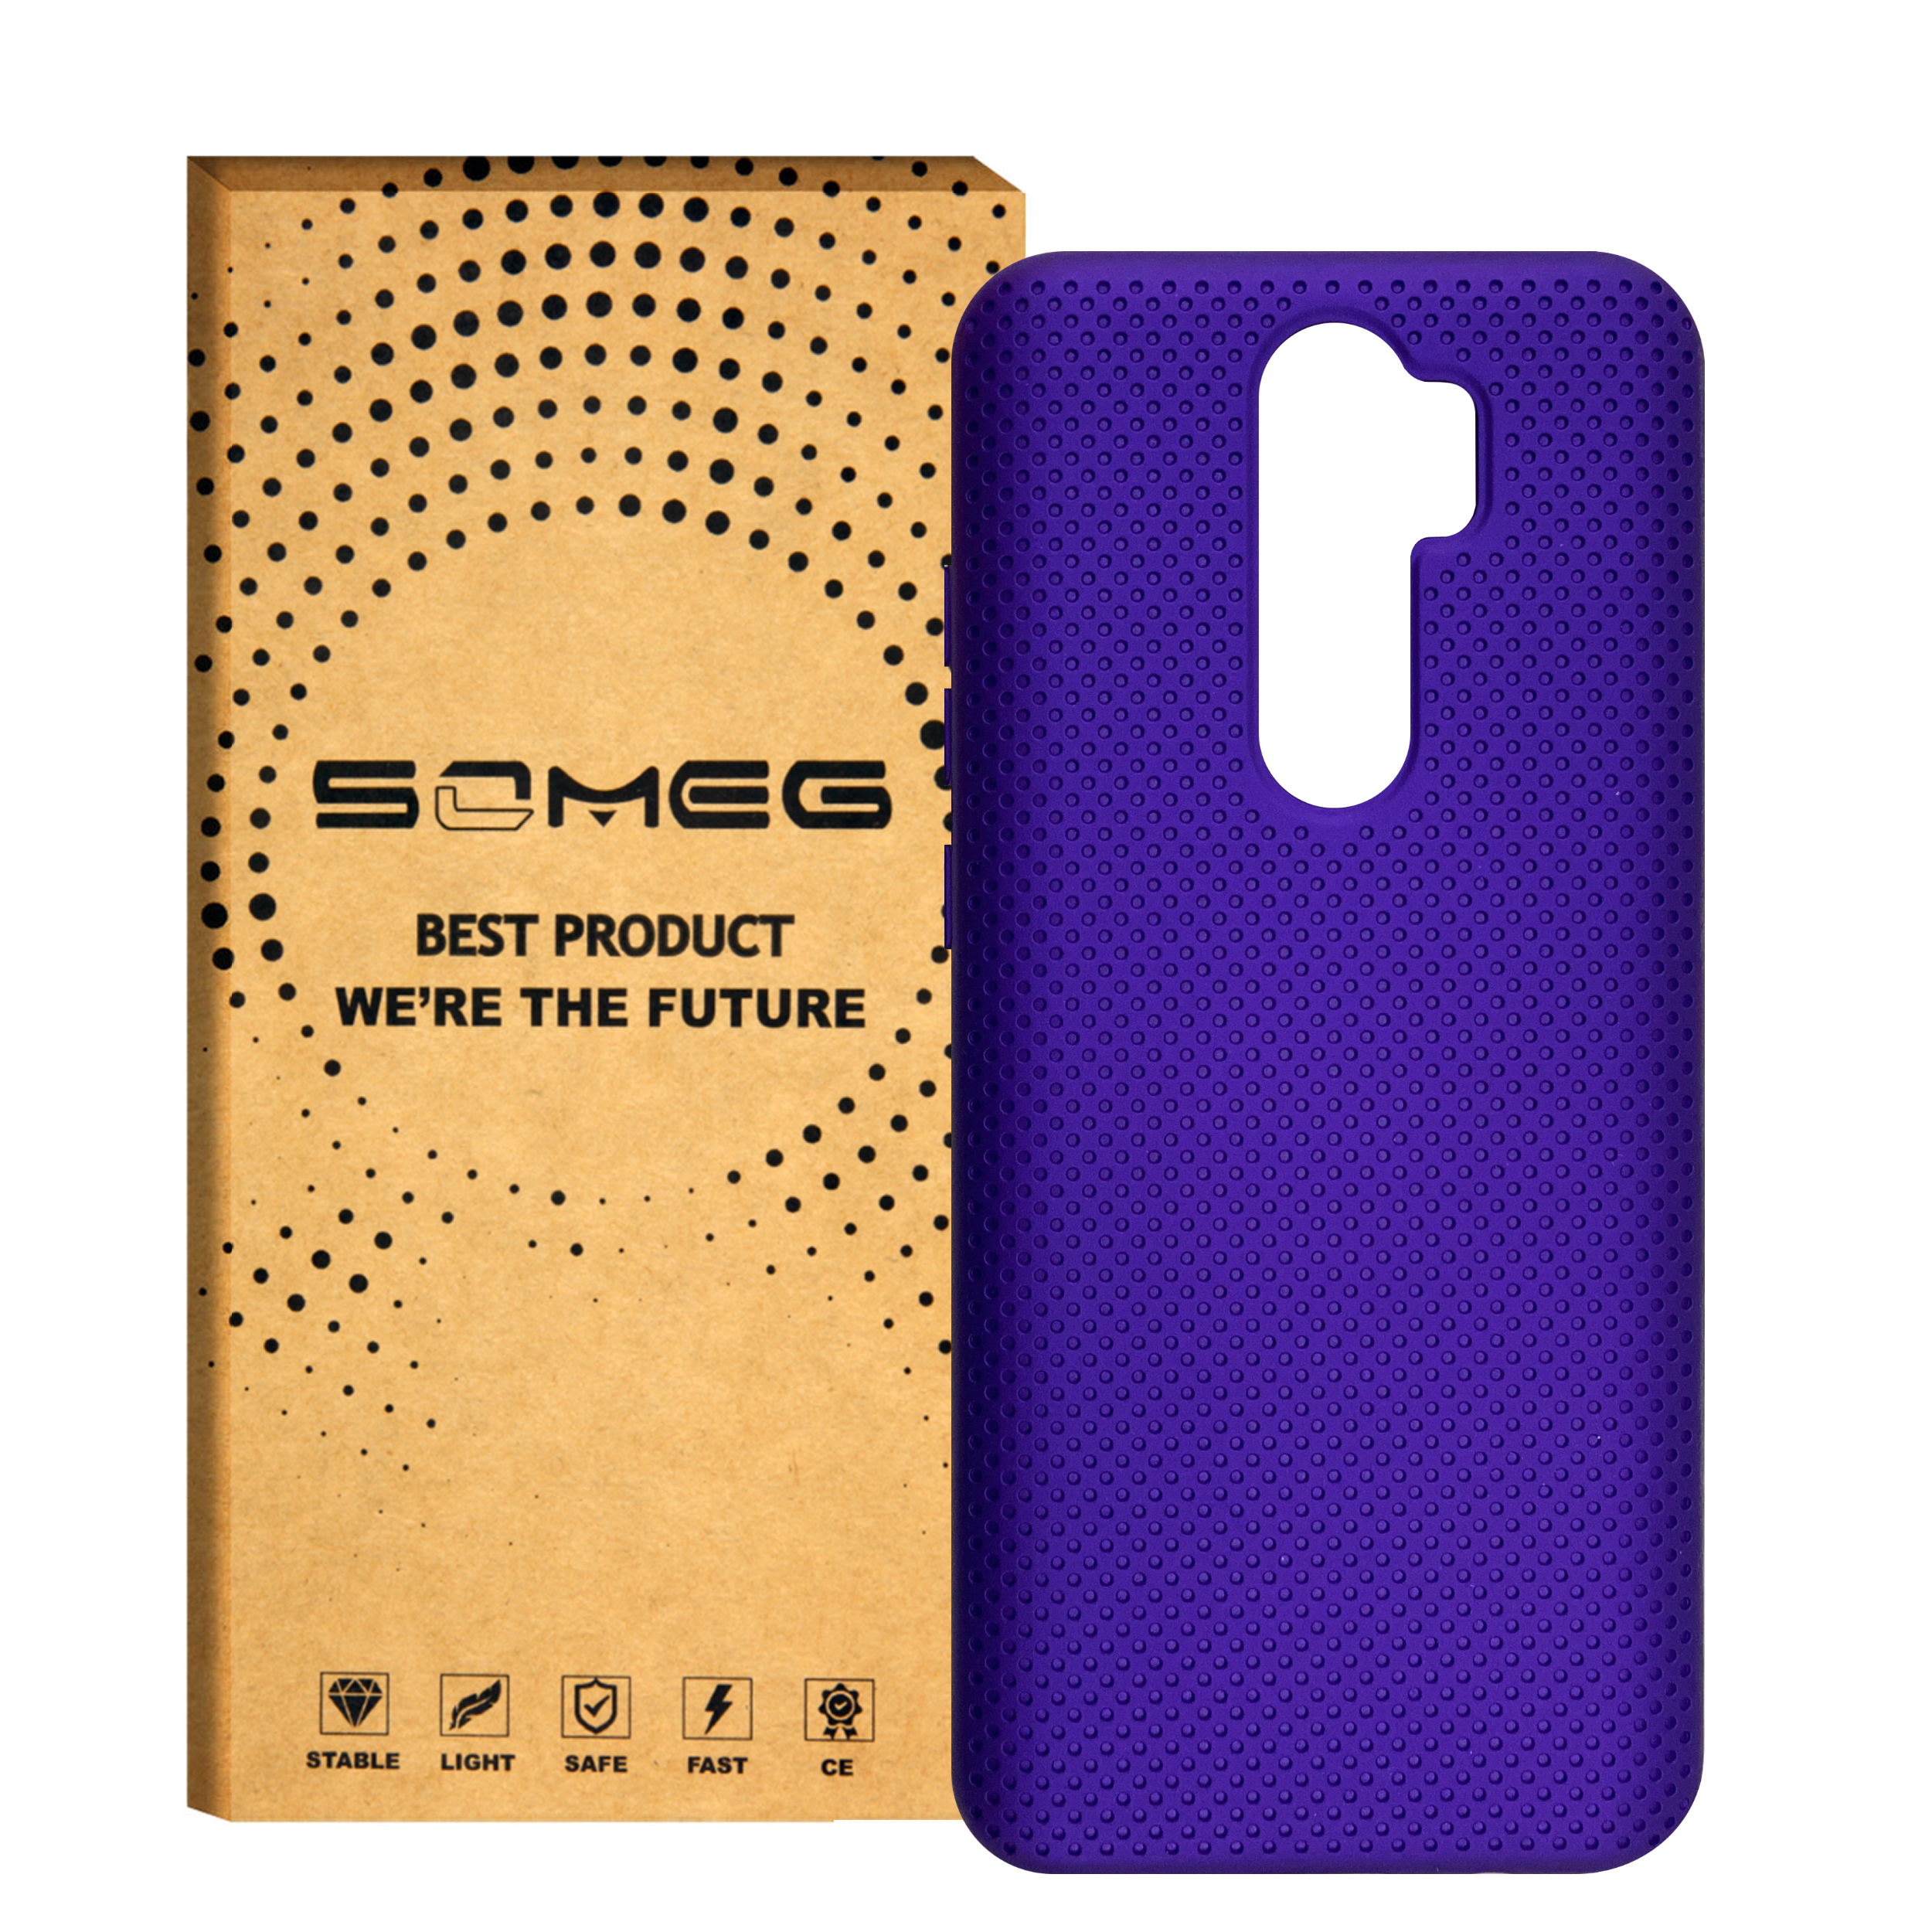 کاور سومگ مدل SMG-Needle مناسب برای گوشی موبایل  شیائومی شیائومی Redmi Note 8 Pro